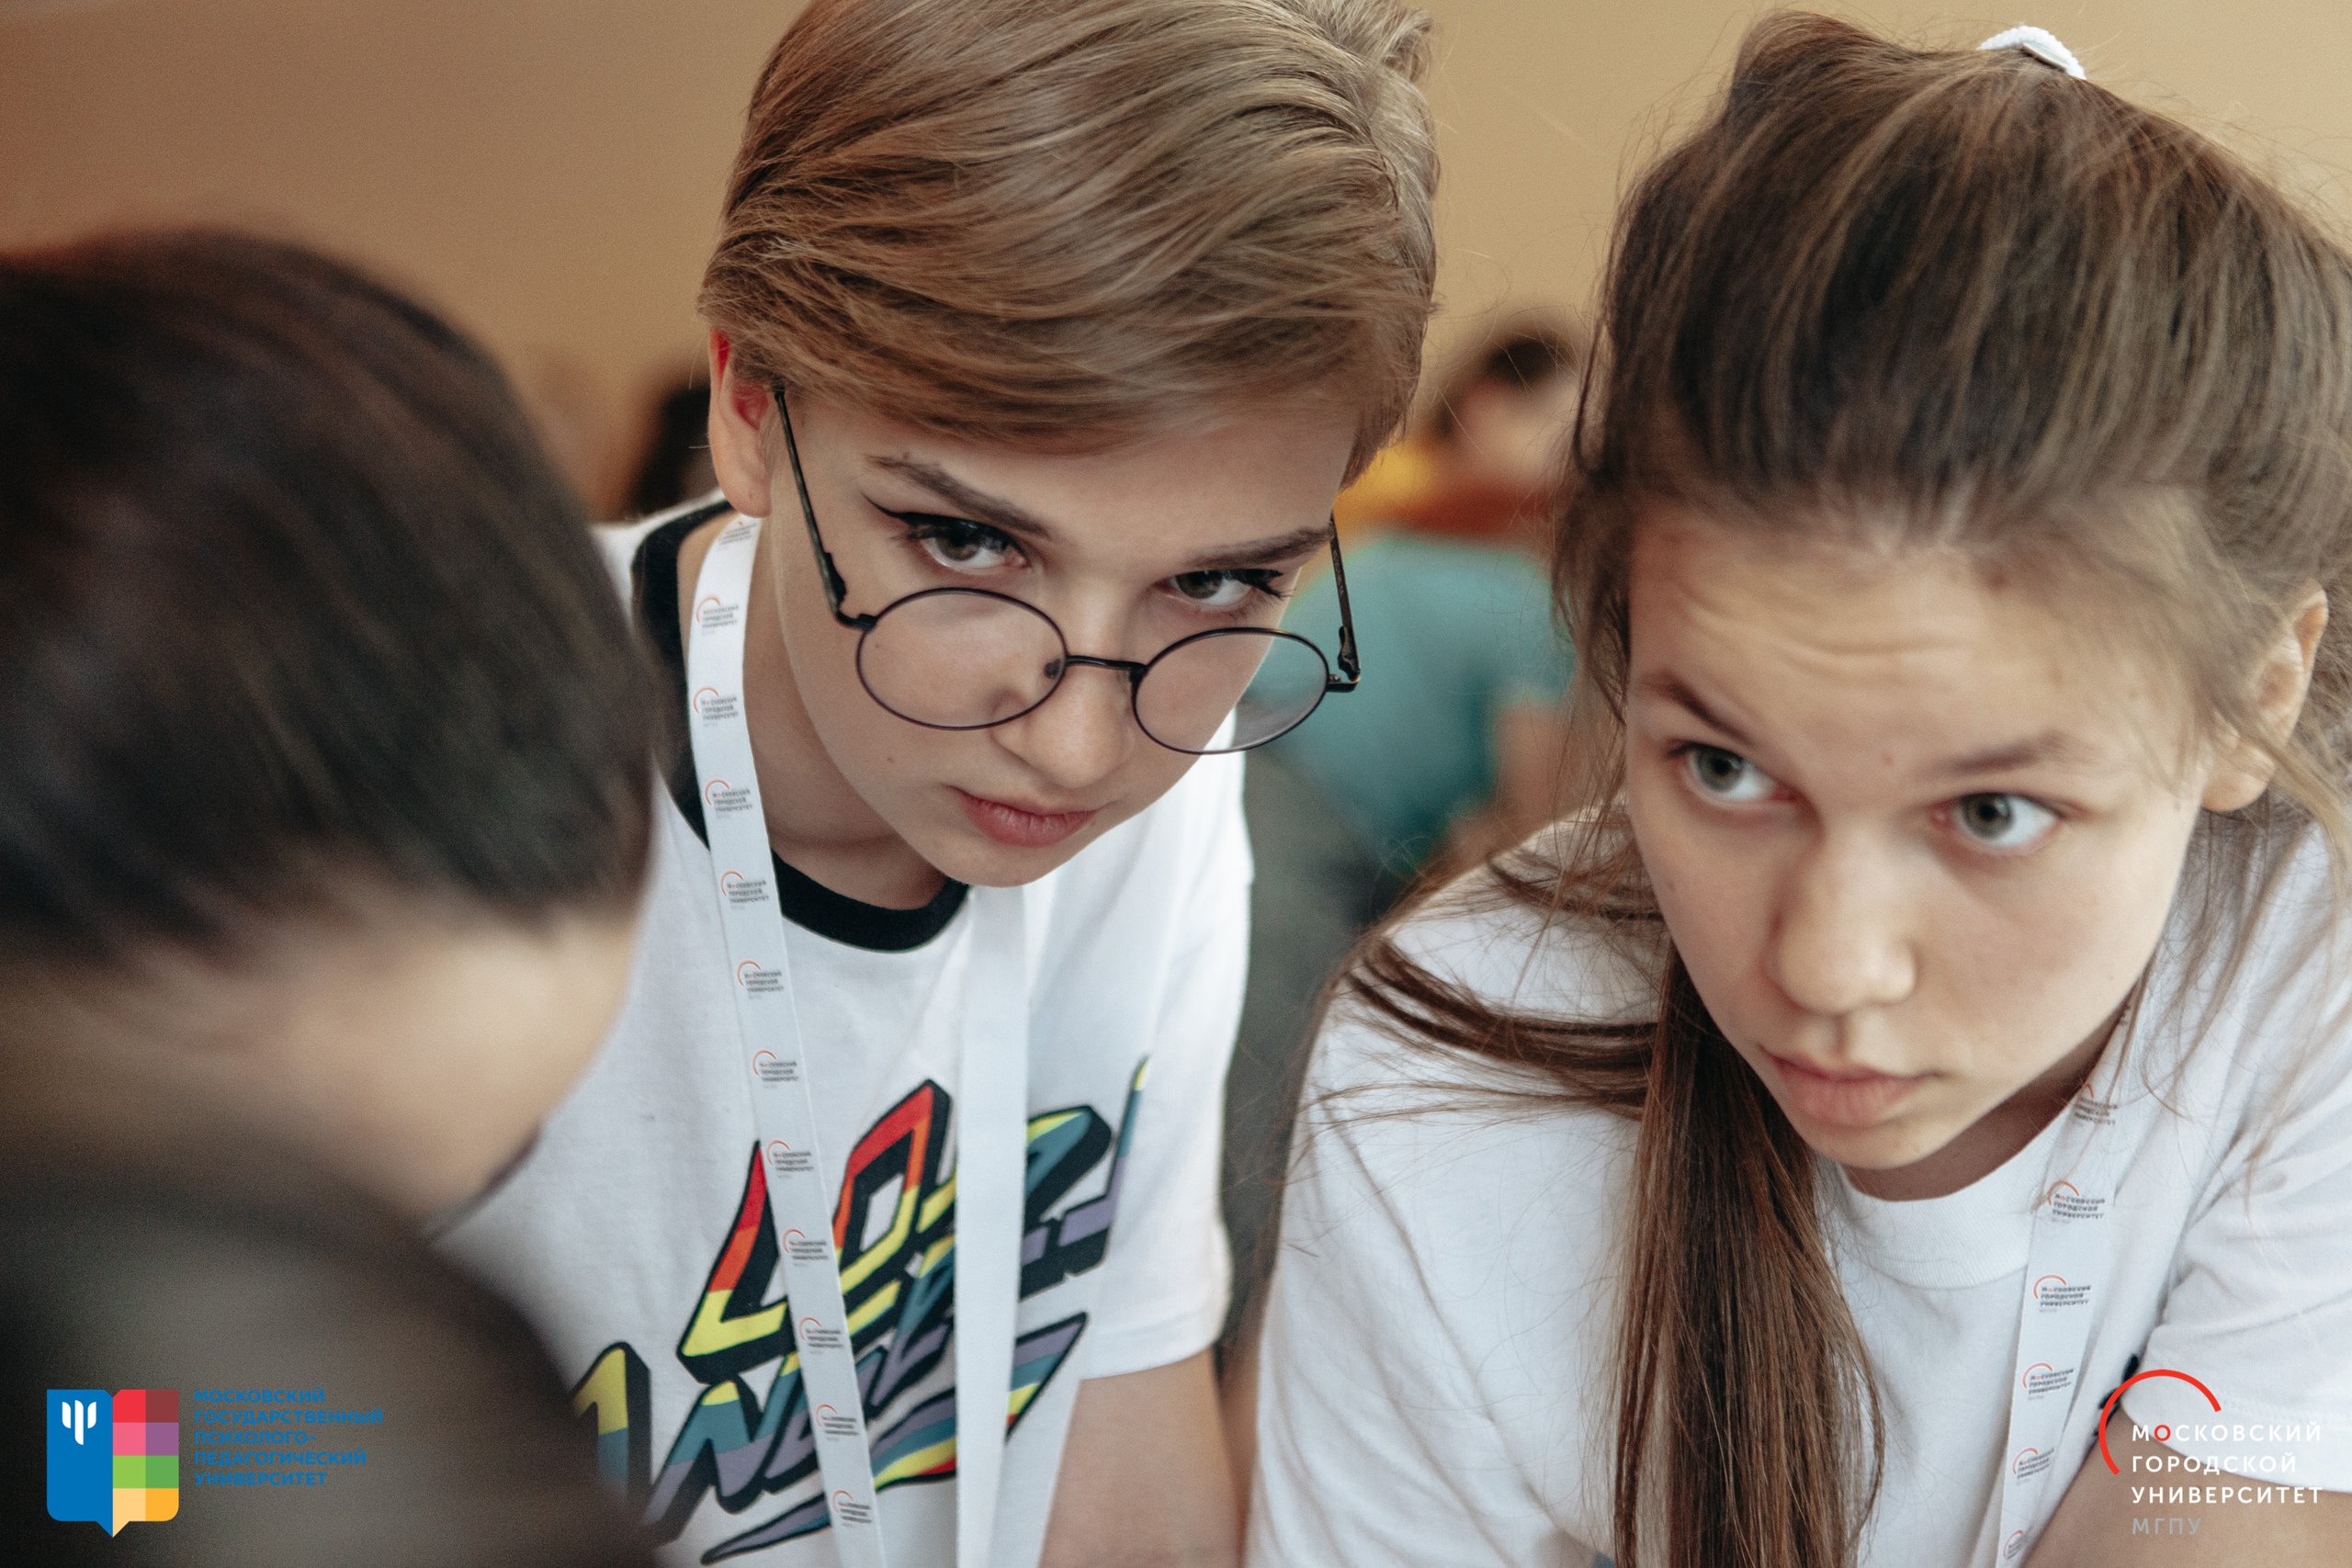 Студенты Ушинки — среди победителей конкурса стартапов Моло. Ко